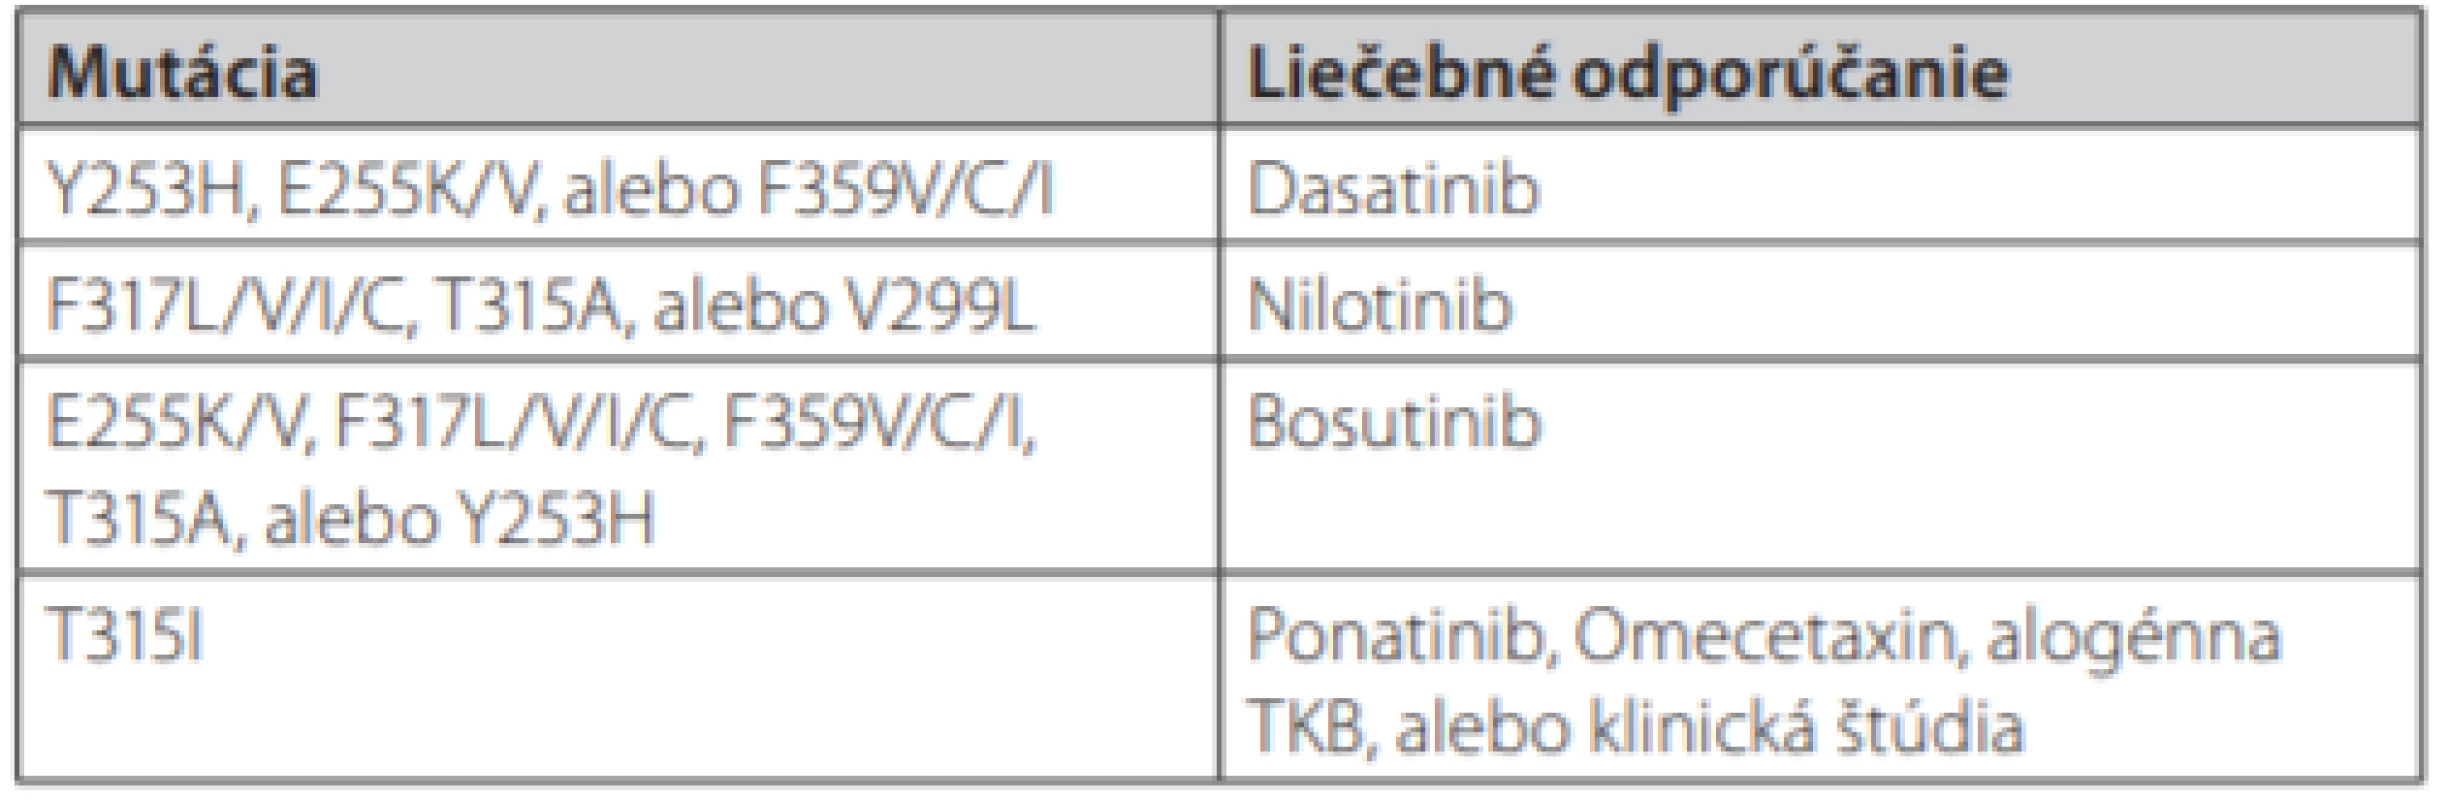 Možnosti liečby CML v prípade výskytu BCR-ABL 1 mutácií (podľa
NCCN odporúčaní 2018) (16)